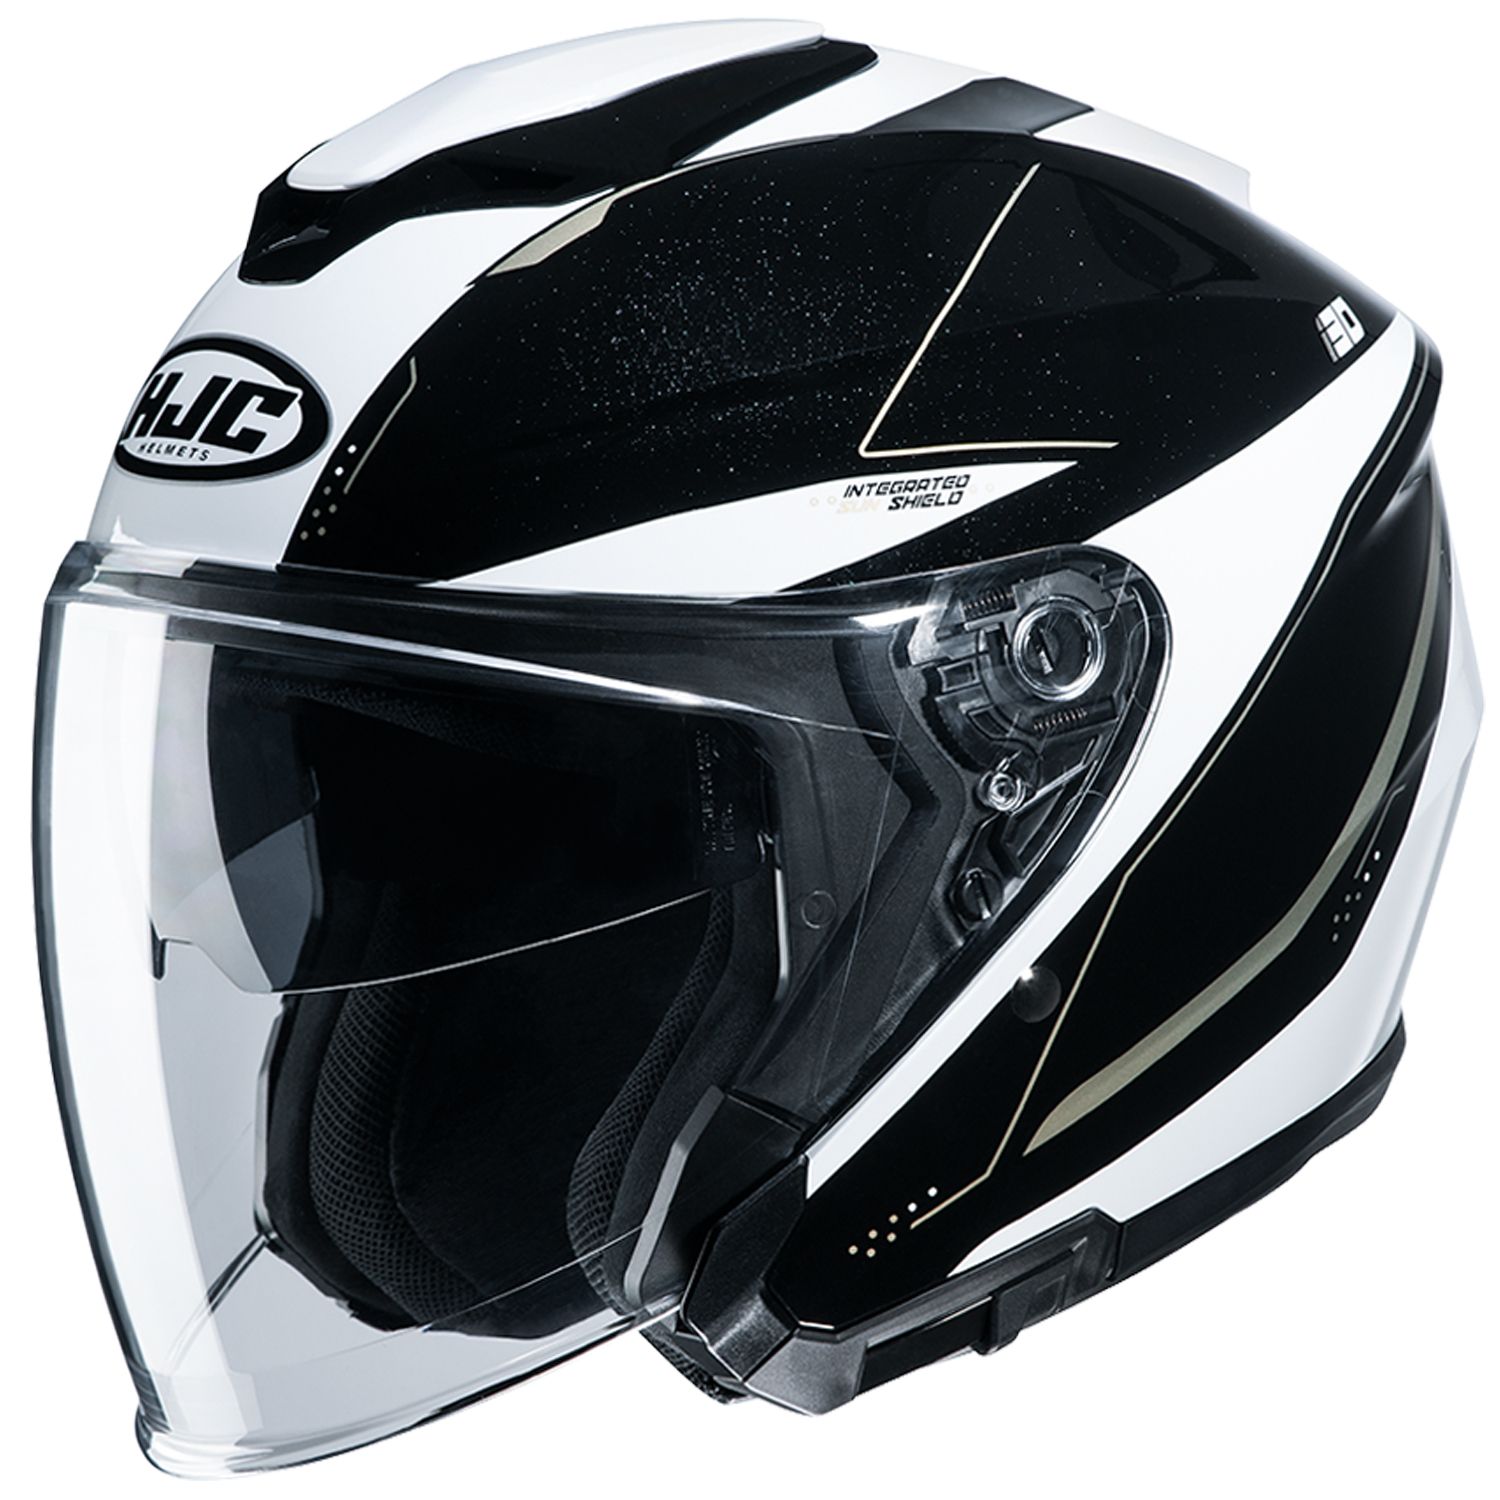 Rsタイチ Rs Taichi バイク用 ヘルメット ジェット Hjc I30 スライト ブラック ホワイト Mサイズ Hjh215bk51m Logic4training Co Uk